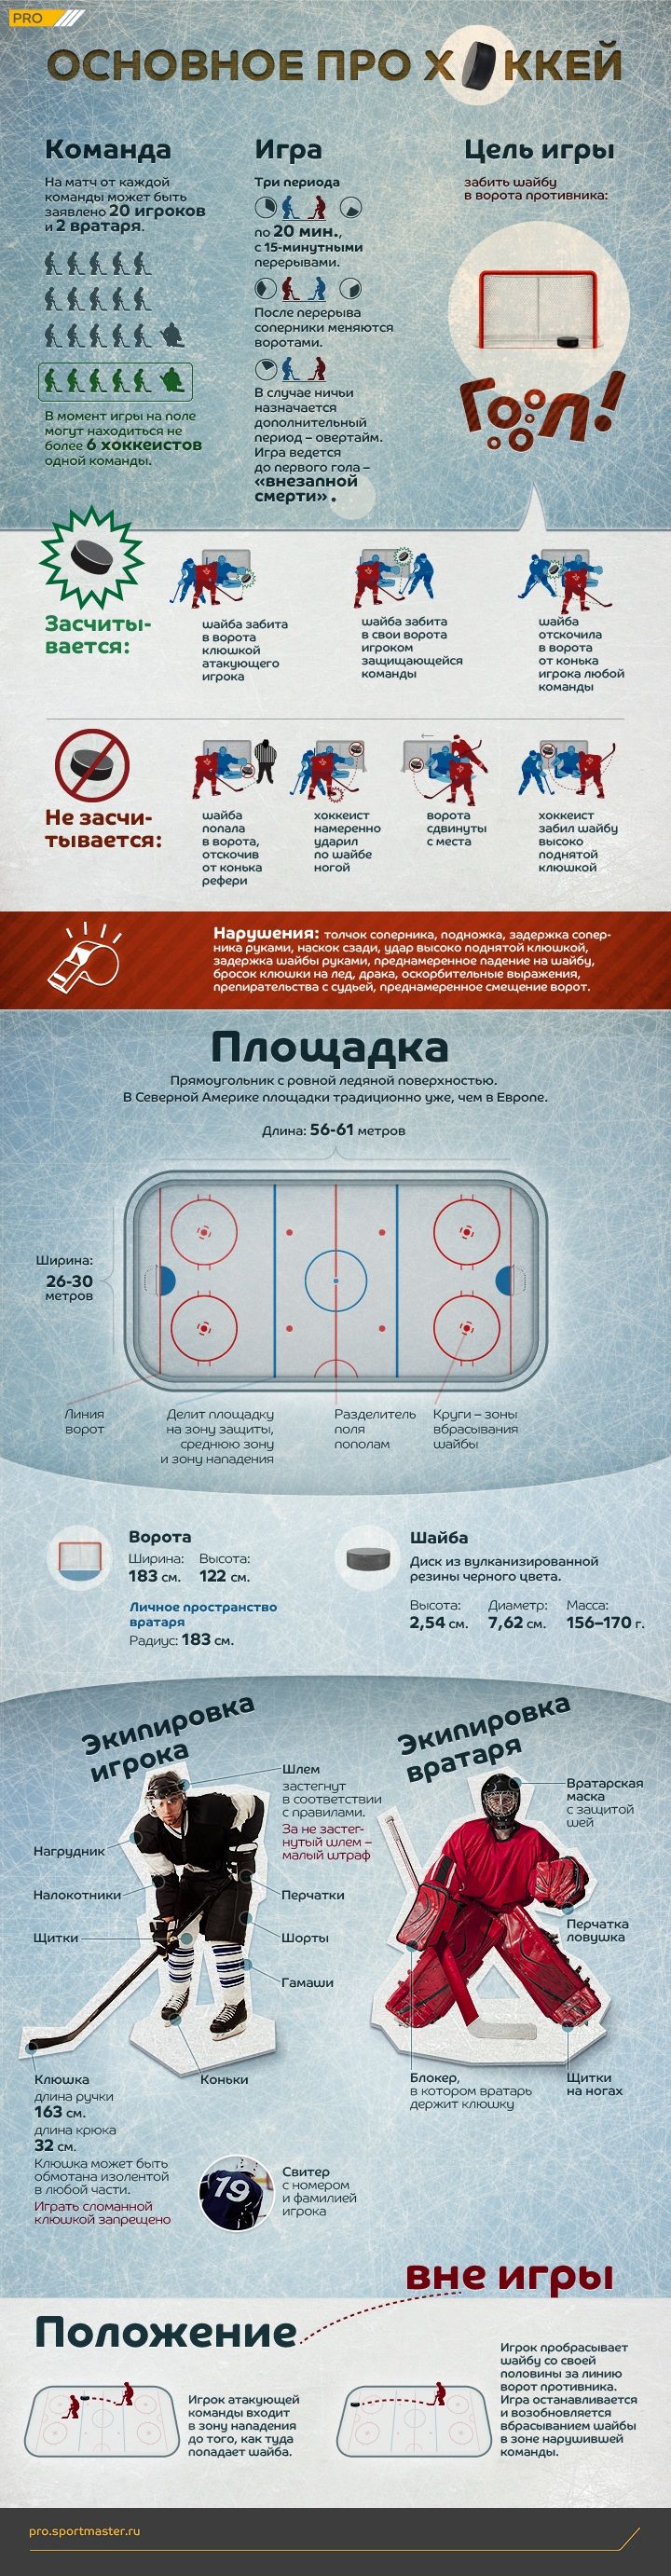 Эскиз проекта Sportmaster.pro Инфографика